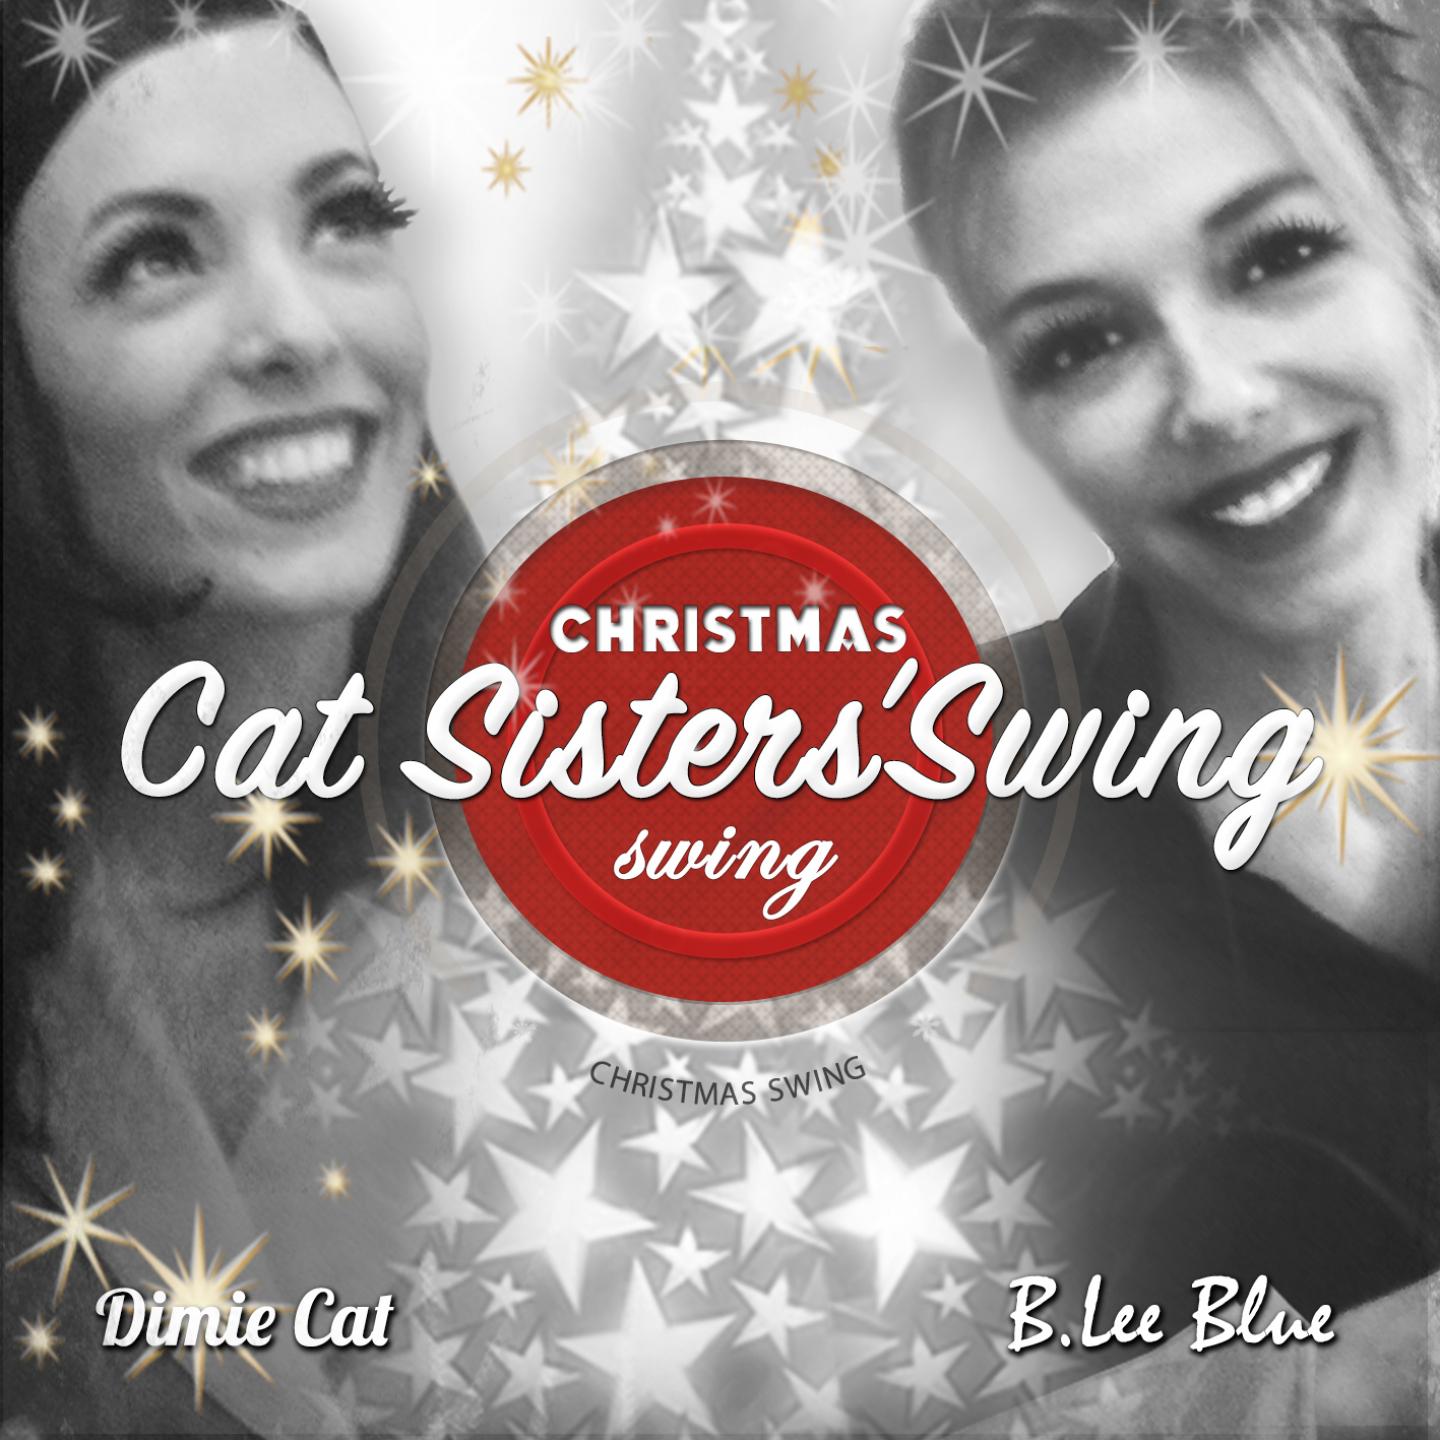 Сестра кэт. Cat sisters'Swing. Димие Кэт. Christmas Swing. Песни Dimie Cat.